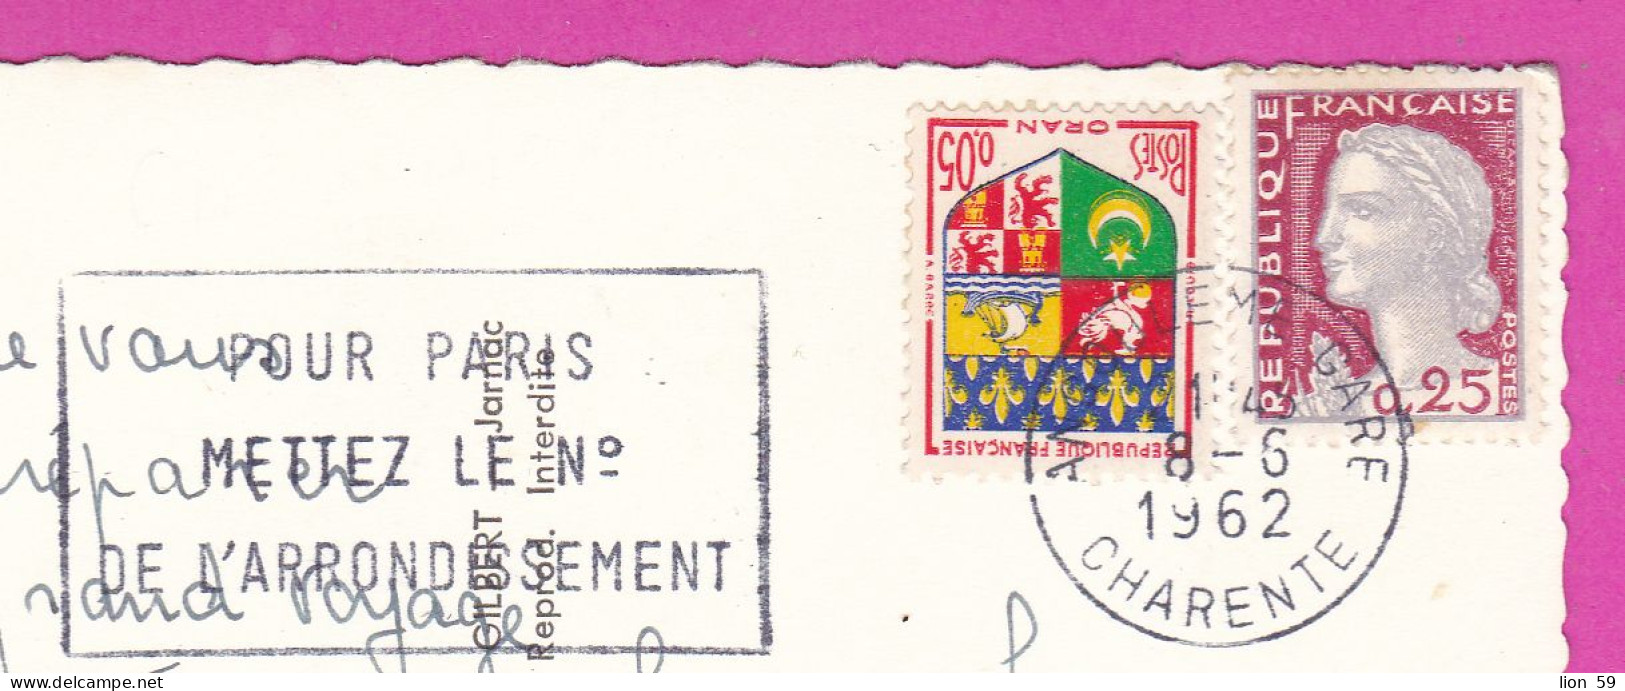 294114 / France - ANGOULEME Les Nouveaux Quartiers De La Gare PC 1962 USED 0.05+25 Fr. Marianne De Decaris Blason D'Oran - Covers & Documents